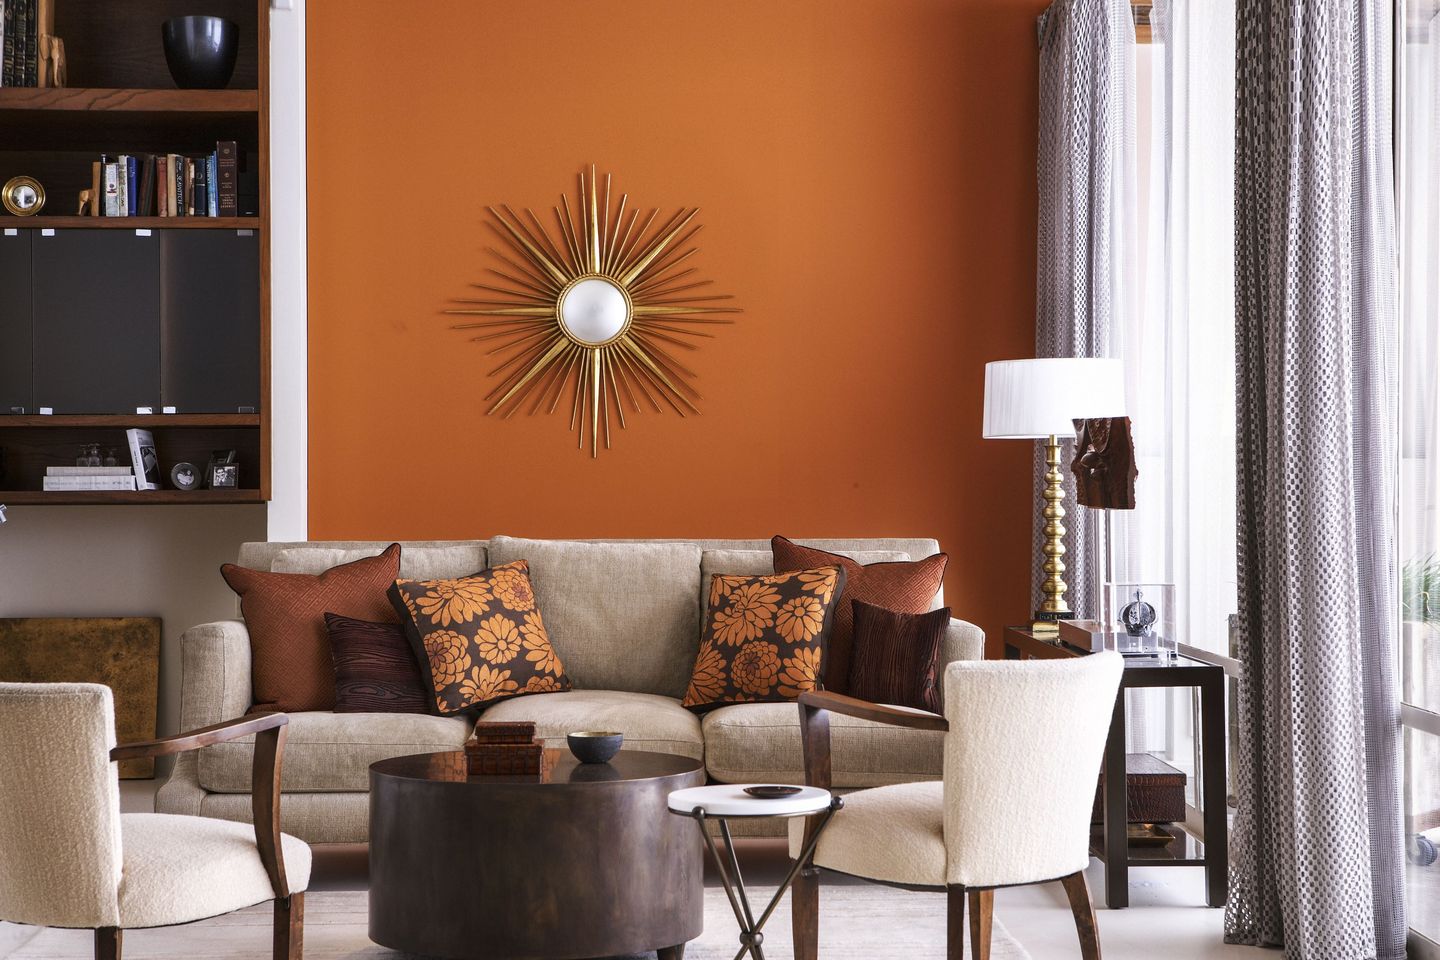 Warna cat rumah orange memberikan kesan modern dan fresh.